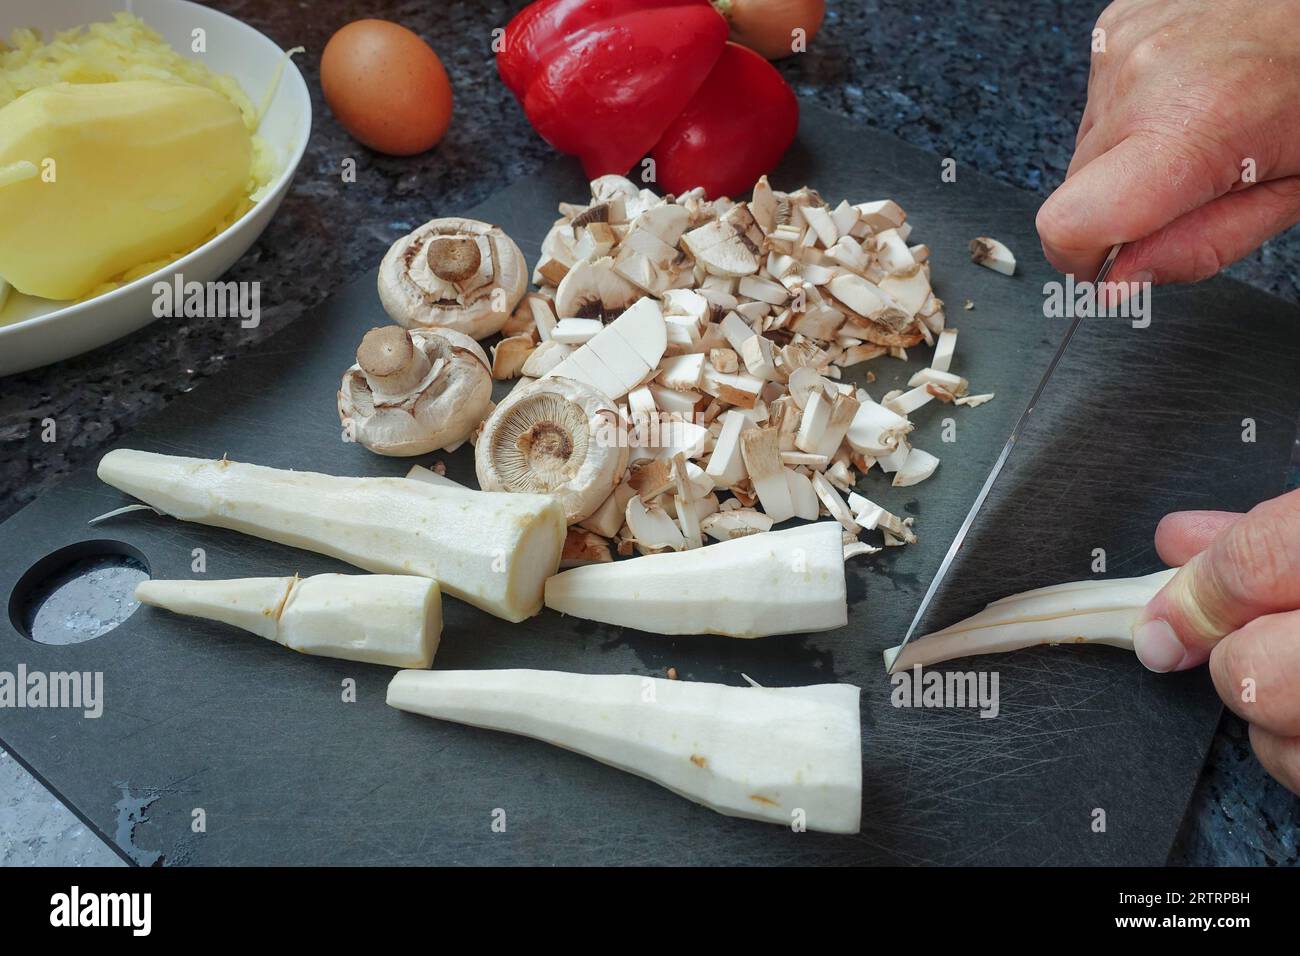 Schwäbische Küche, Zubereitung von deftigem Kartoffelstrudel, Petersilienwurzel, Schnittgemüse zum Füllen, Pilze, Kartoffeln auf der Rückseite gekocht und geschält Stockfoto